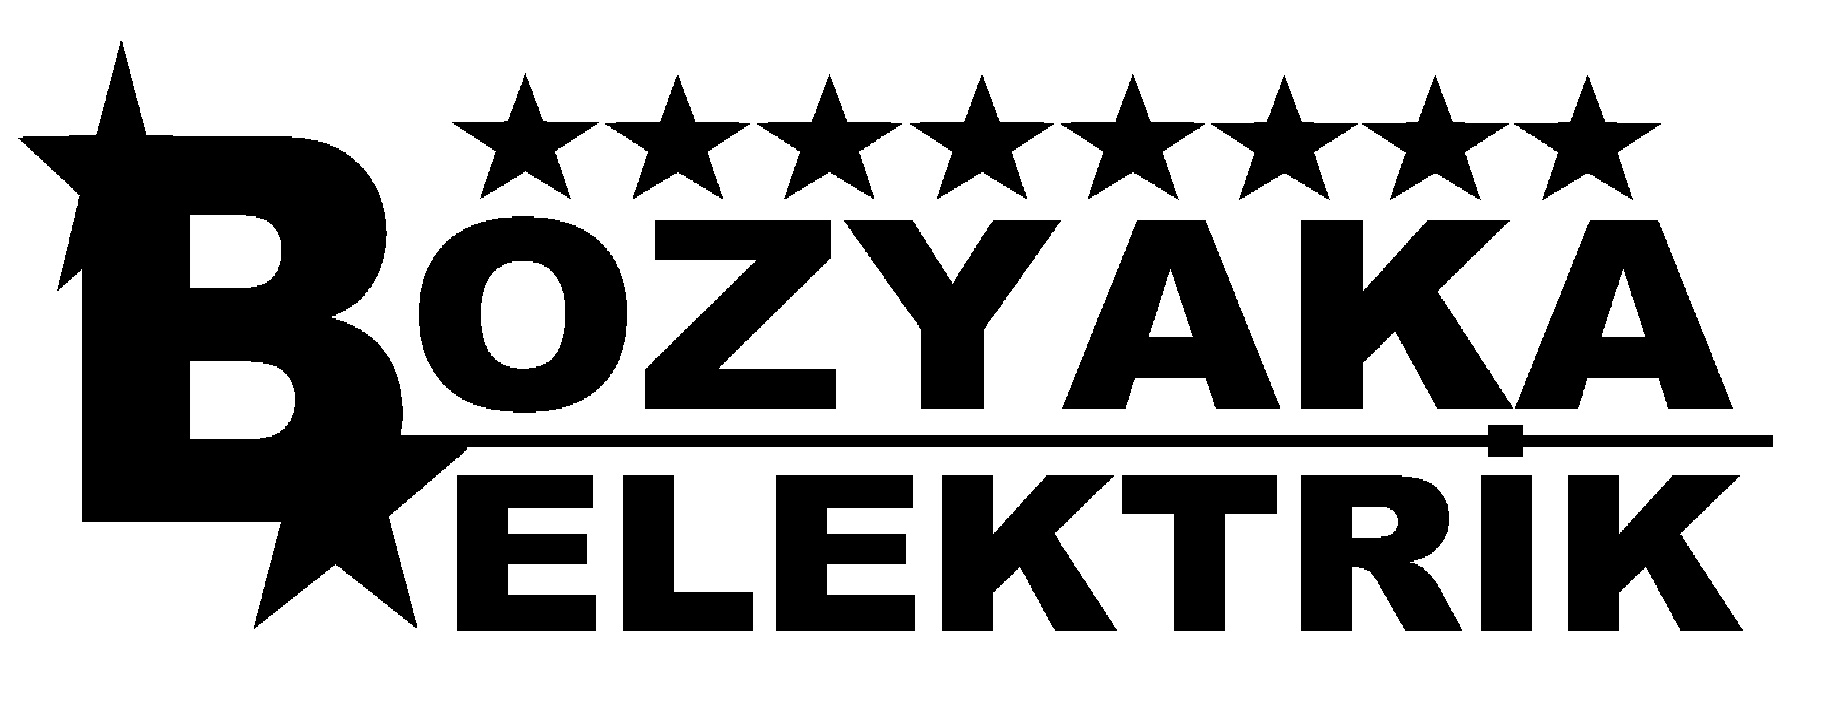 Bozyaka Elektrik